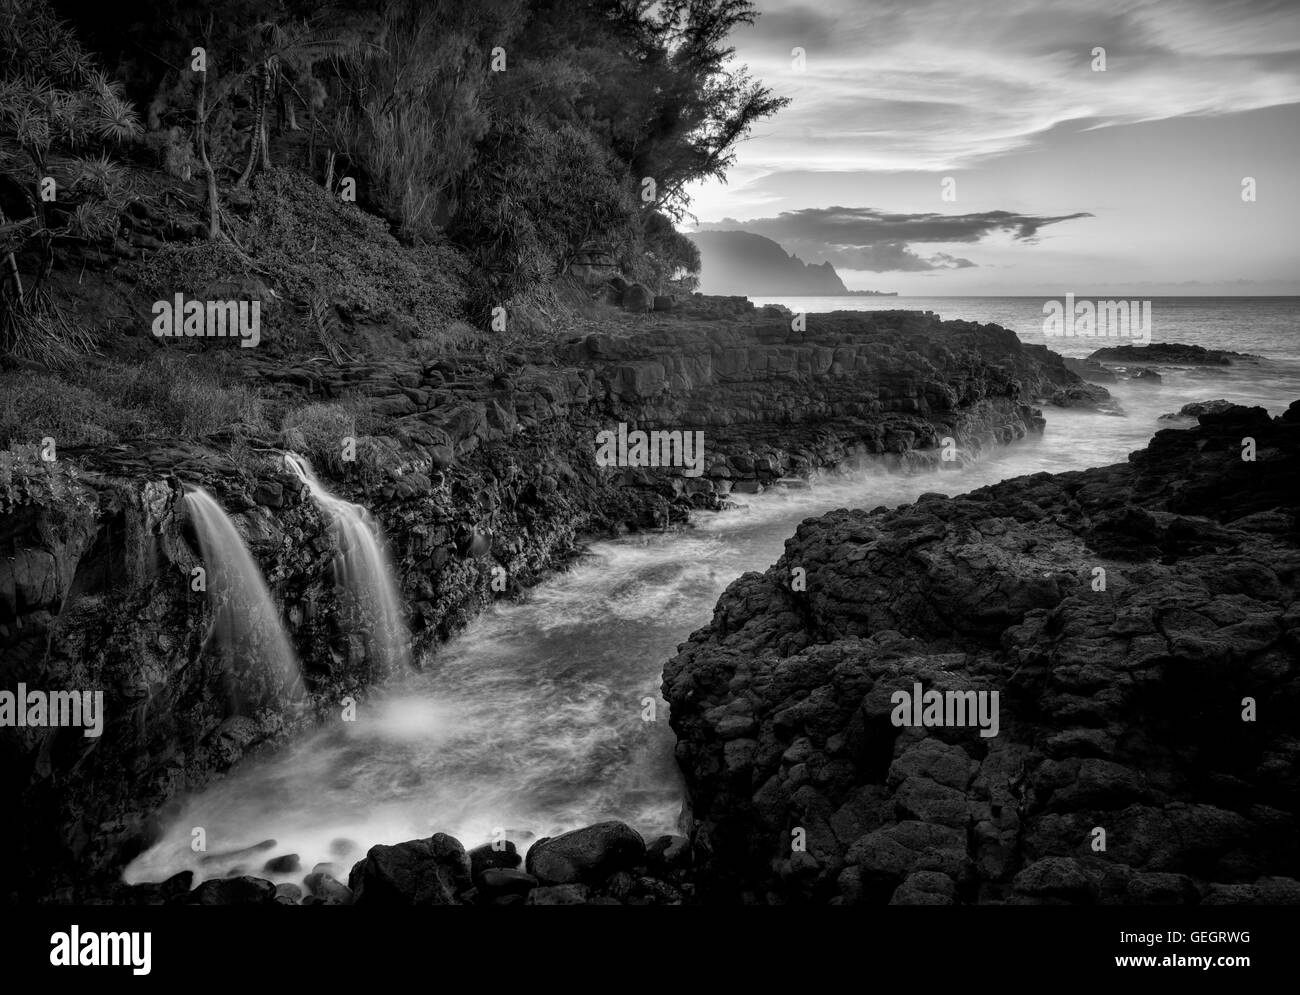 Imprimeur de la baignoire de Cascades. Kauai, Hawaii Banque D'Images